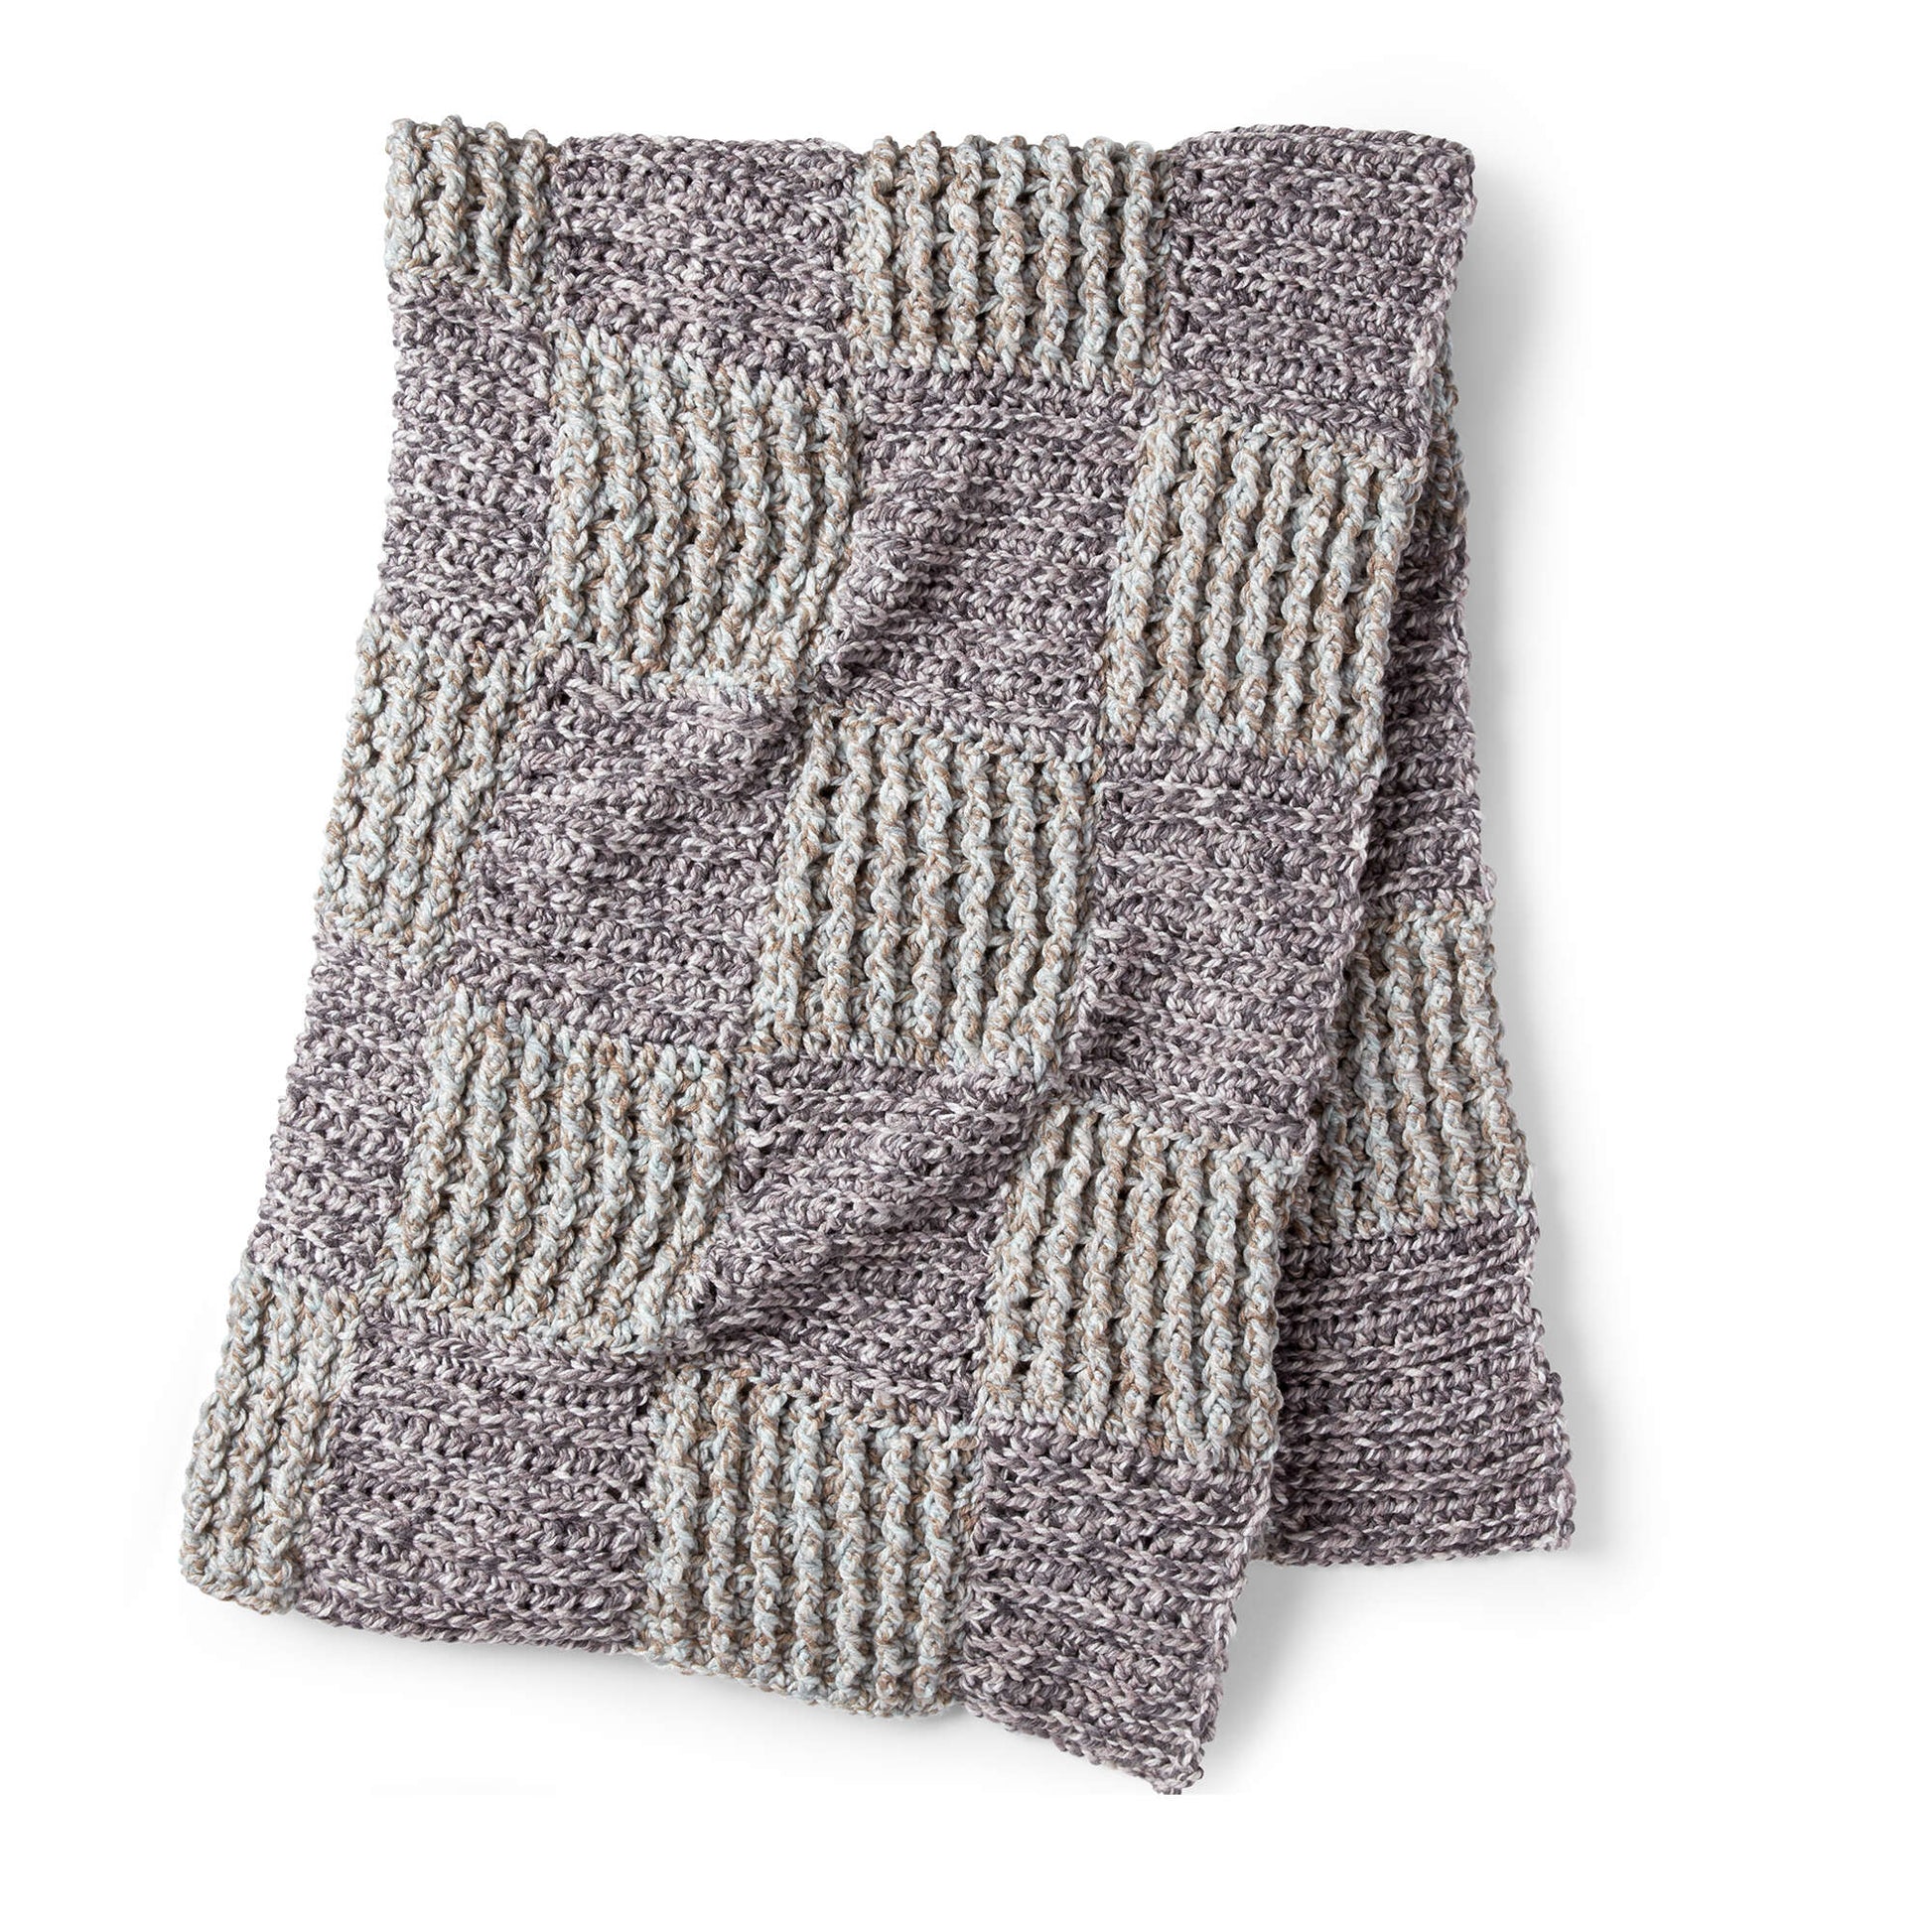 Free Bernat Twisted Grid Crochet Blanket Pattern